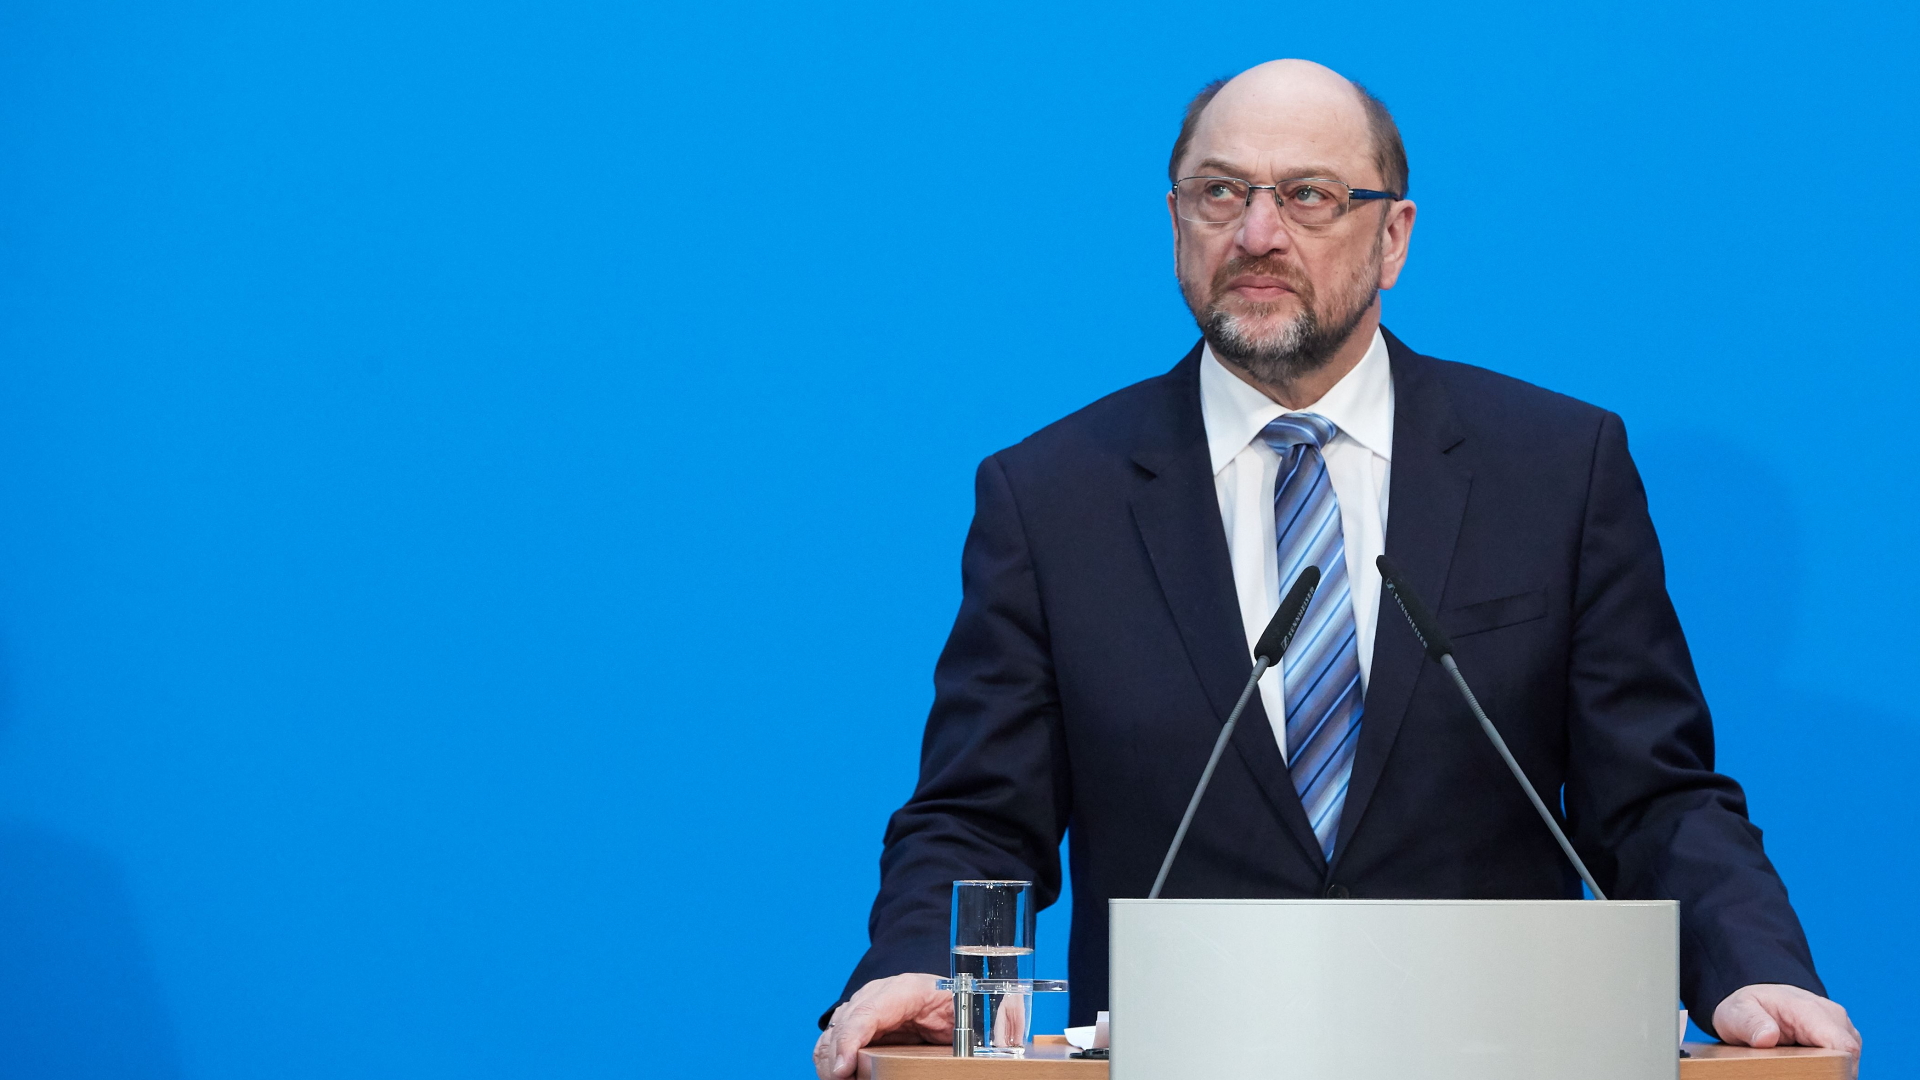 SPD-Vorsitzender Martin Schulz bei einer Pressekonferenz am 07.02. 2018. | JEON/EPA-EFE/REX/Shutterstock